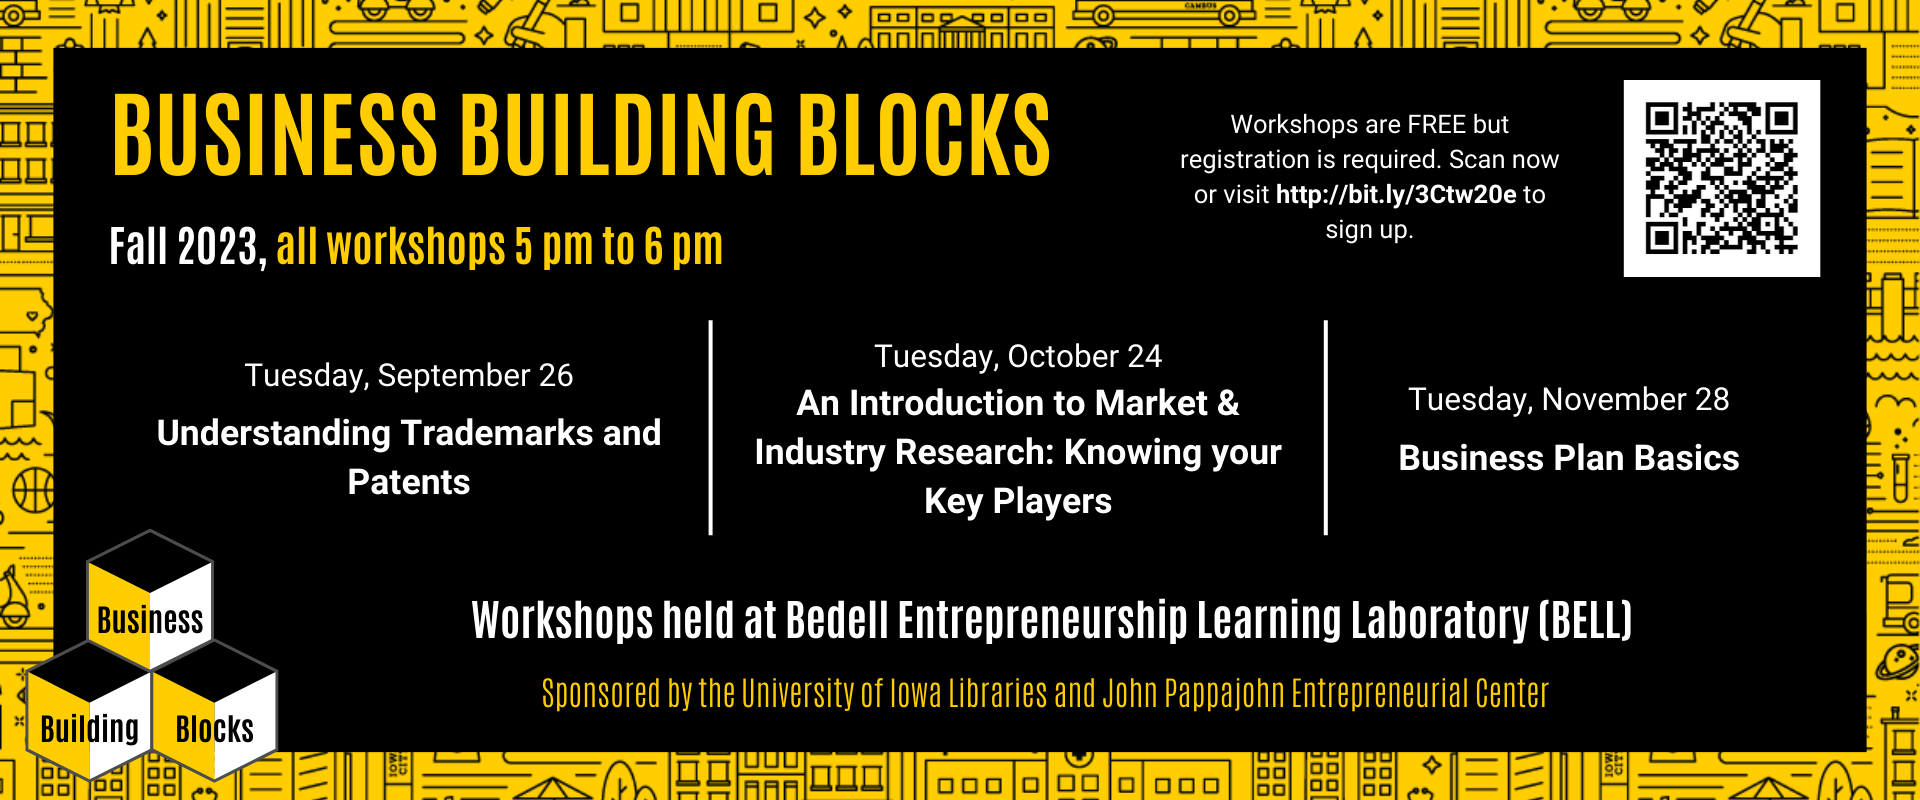 Business Building Blocks workshops